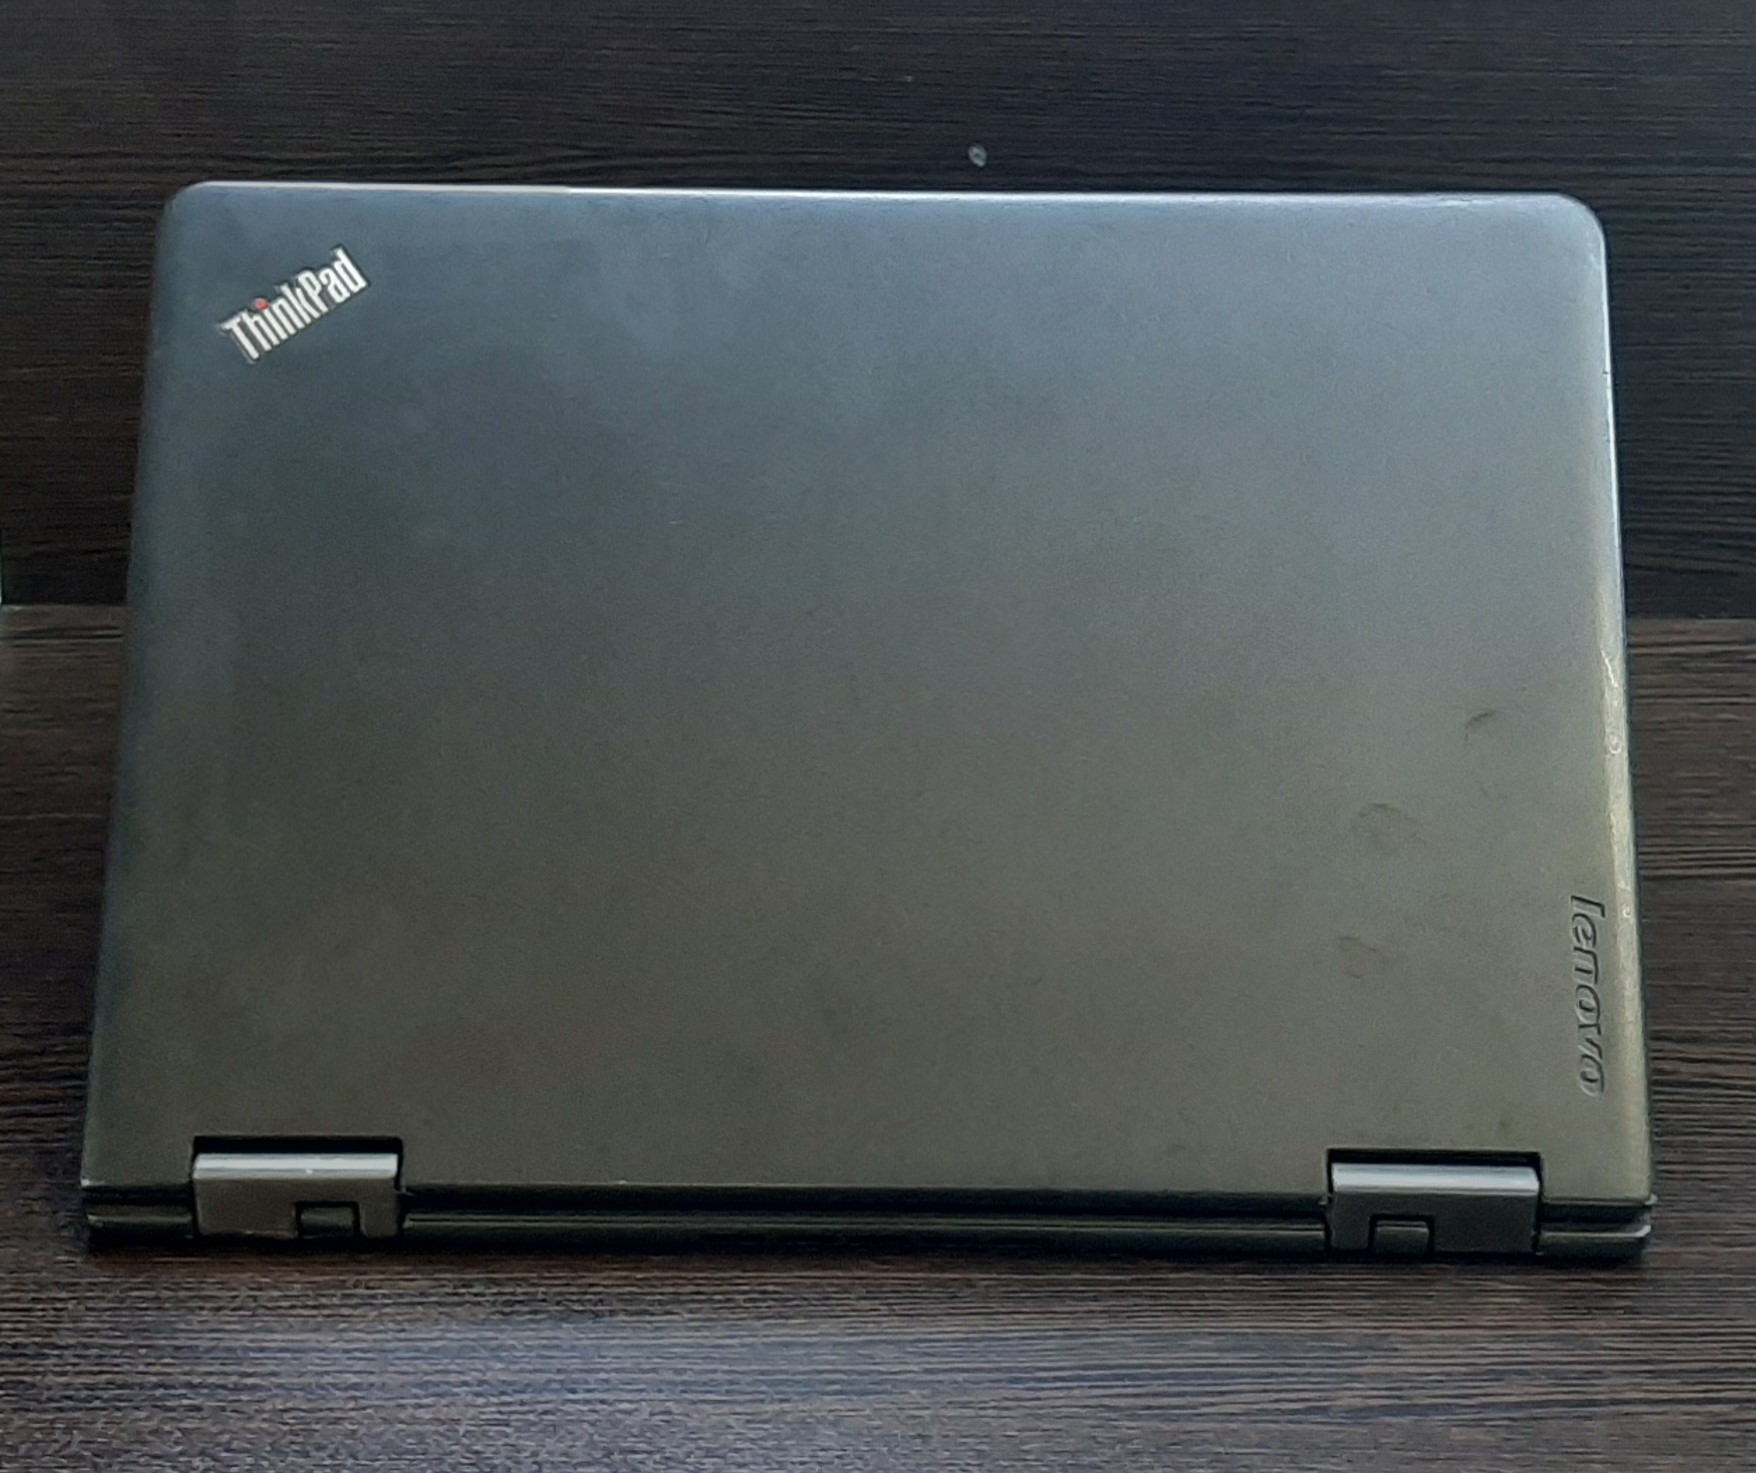 لپ تاپ استوک لنوو مدل Lenovo Yoga 12 با مشخصات i5-5gen-8GB-128GB-SSD-2GB-intel-HD-5500